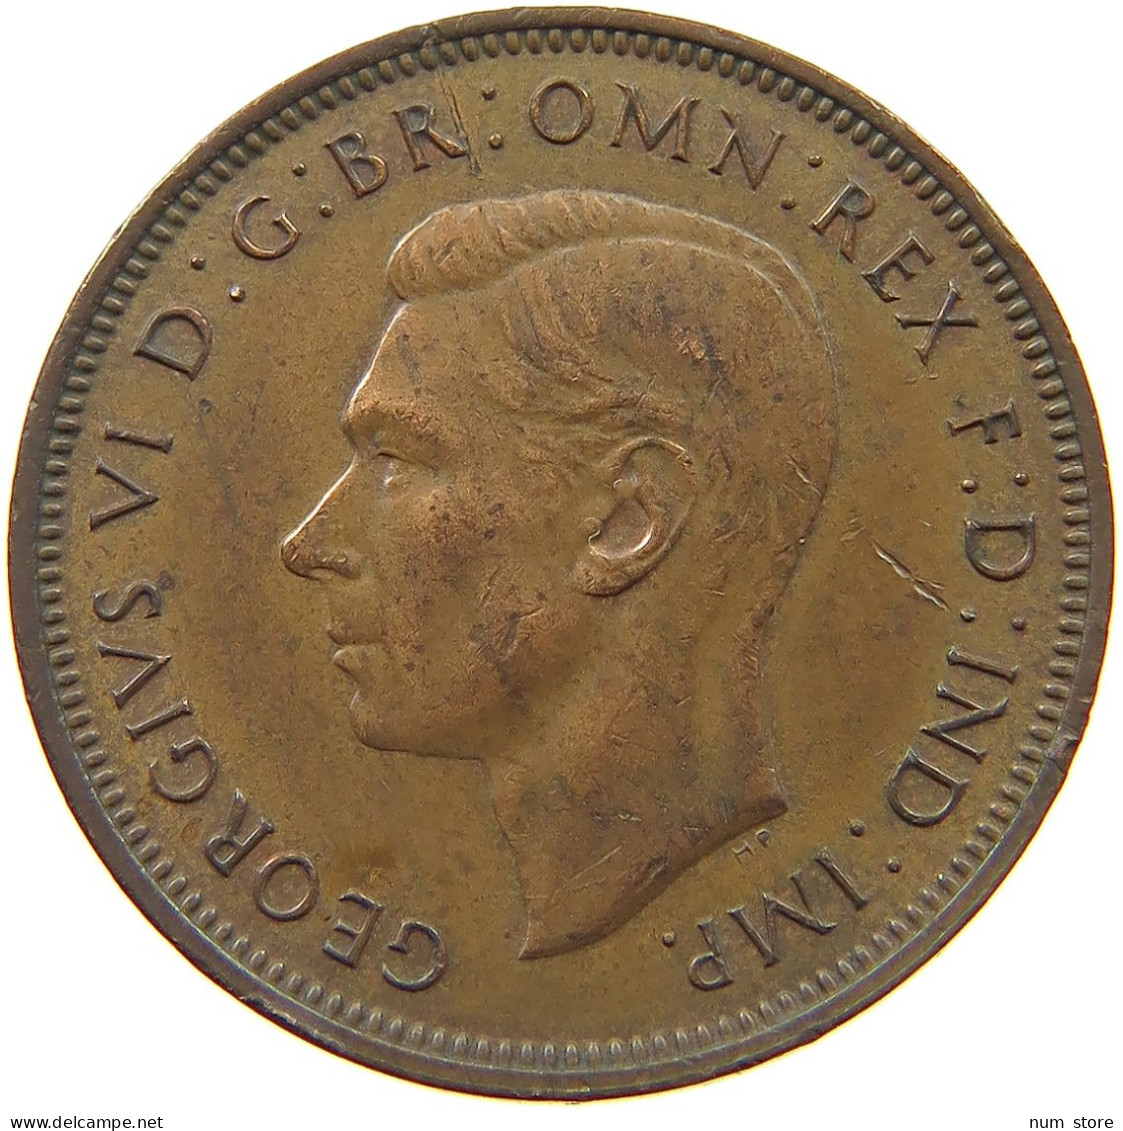 GREAT BRITAIN HALF PENNY 1943 #s036 0387 - C. 1/2 Penny